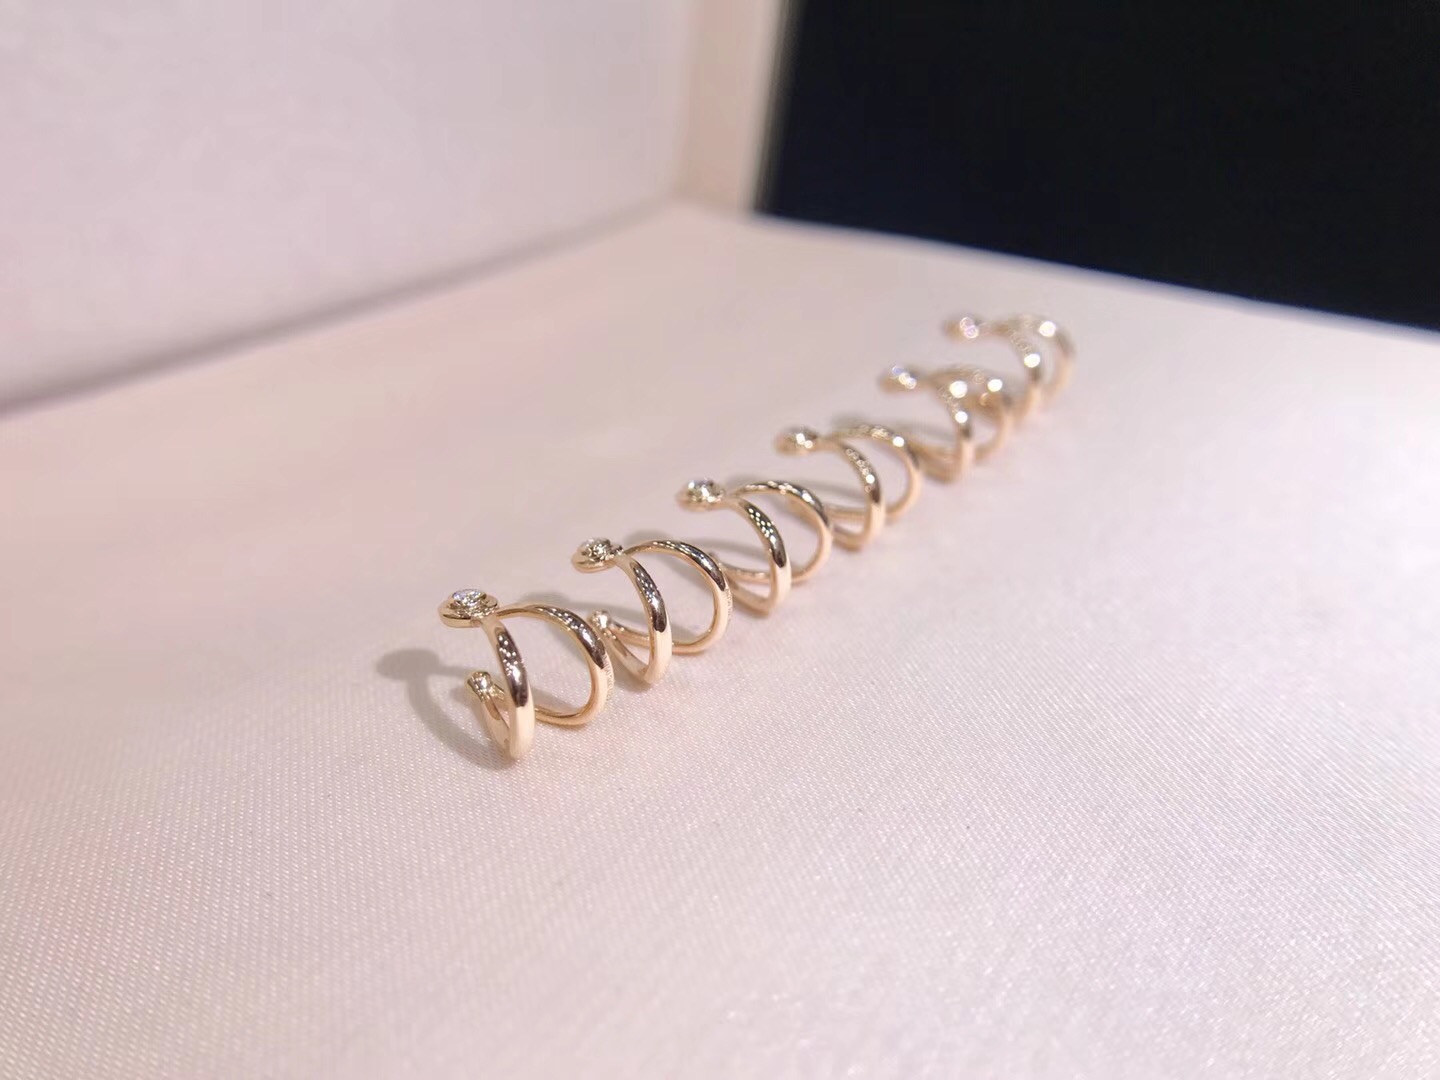 EW00995 Diamond Earrings in 18k Gold